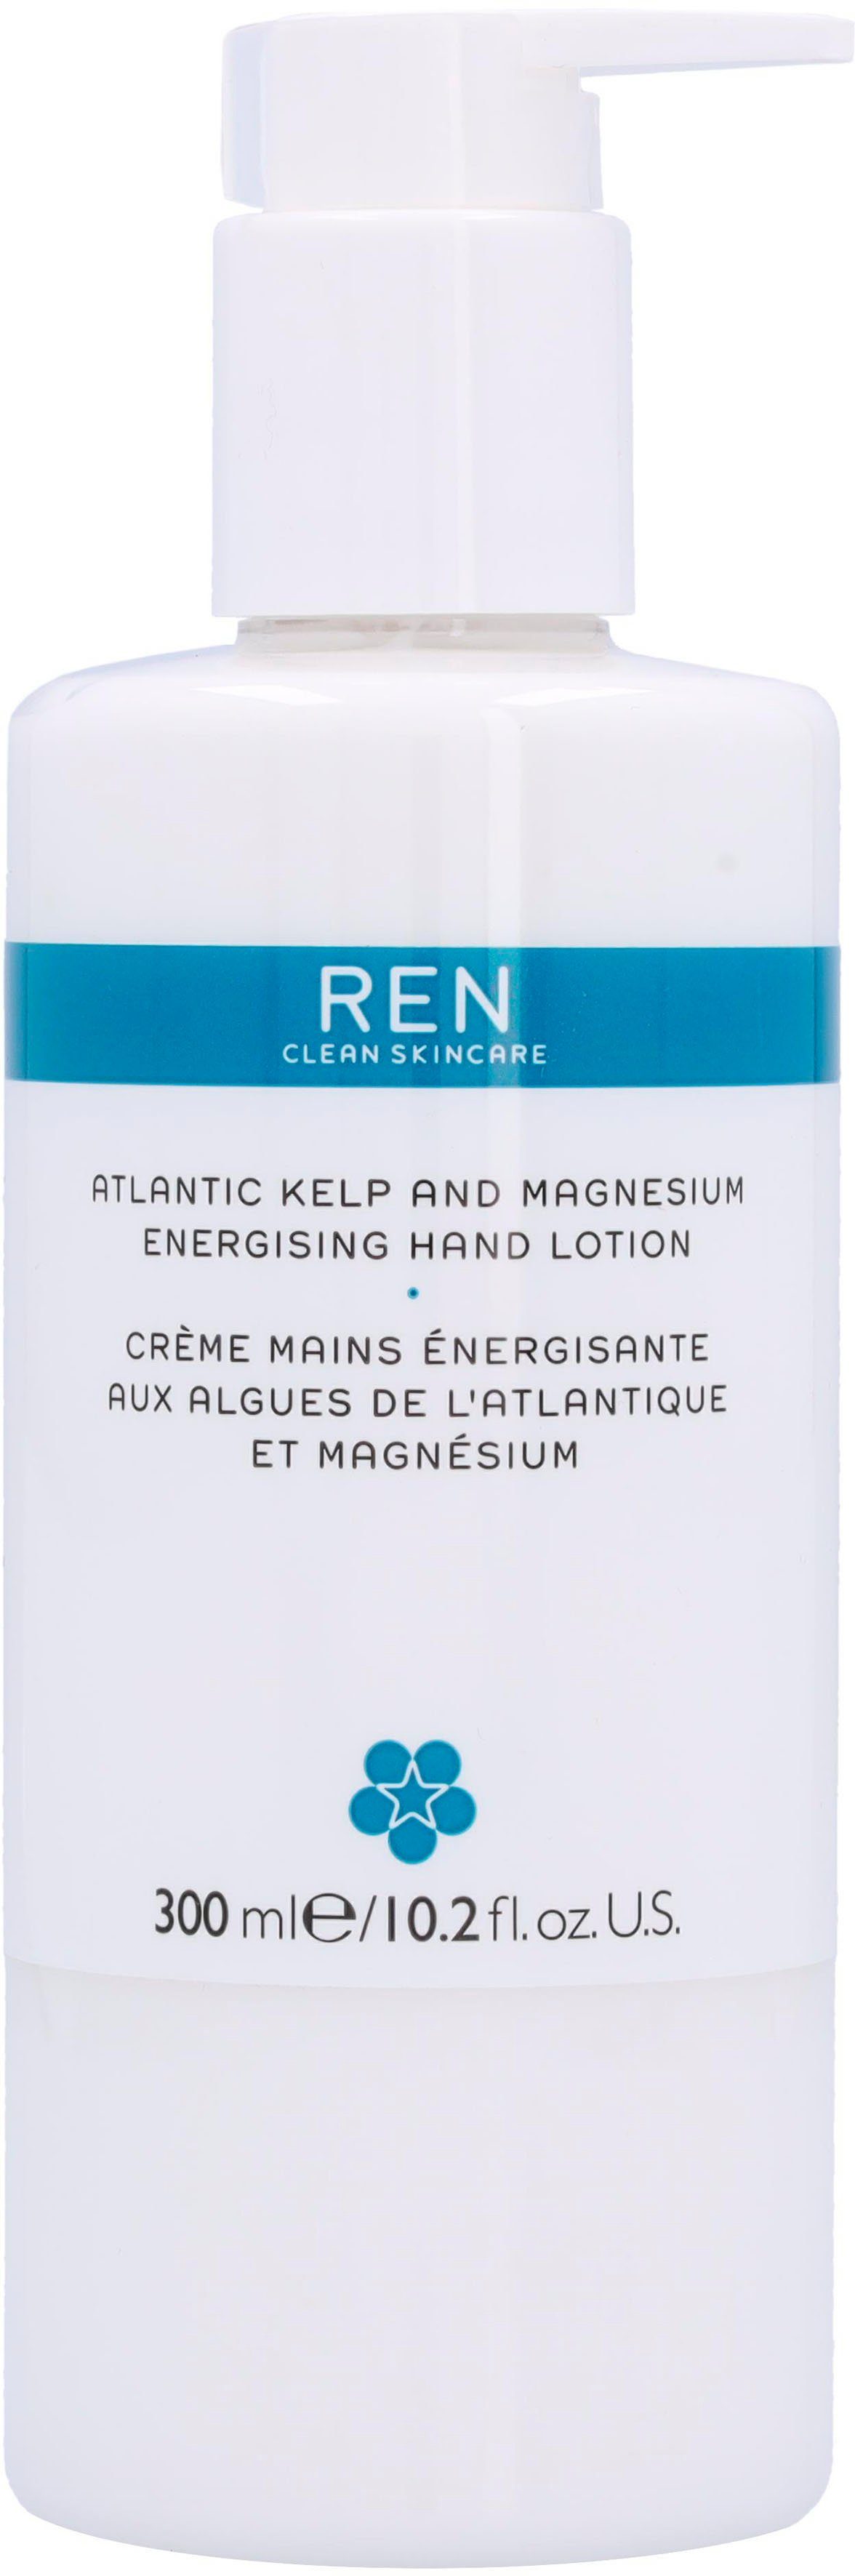 Clean And Hand Ren Atlantic REN Skincare Energising Magnesium Kelp Lotion Handlotion